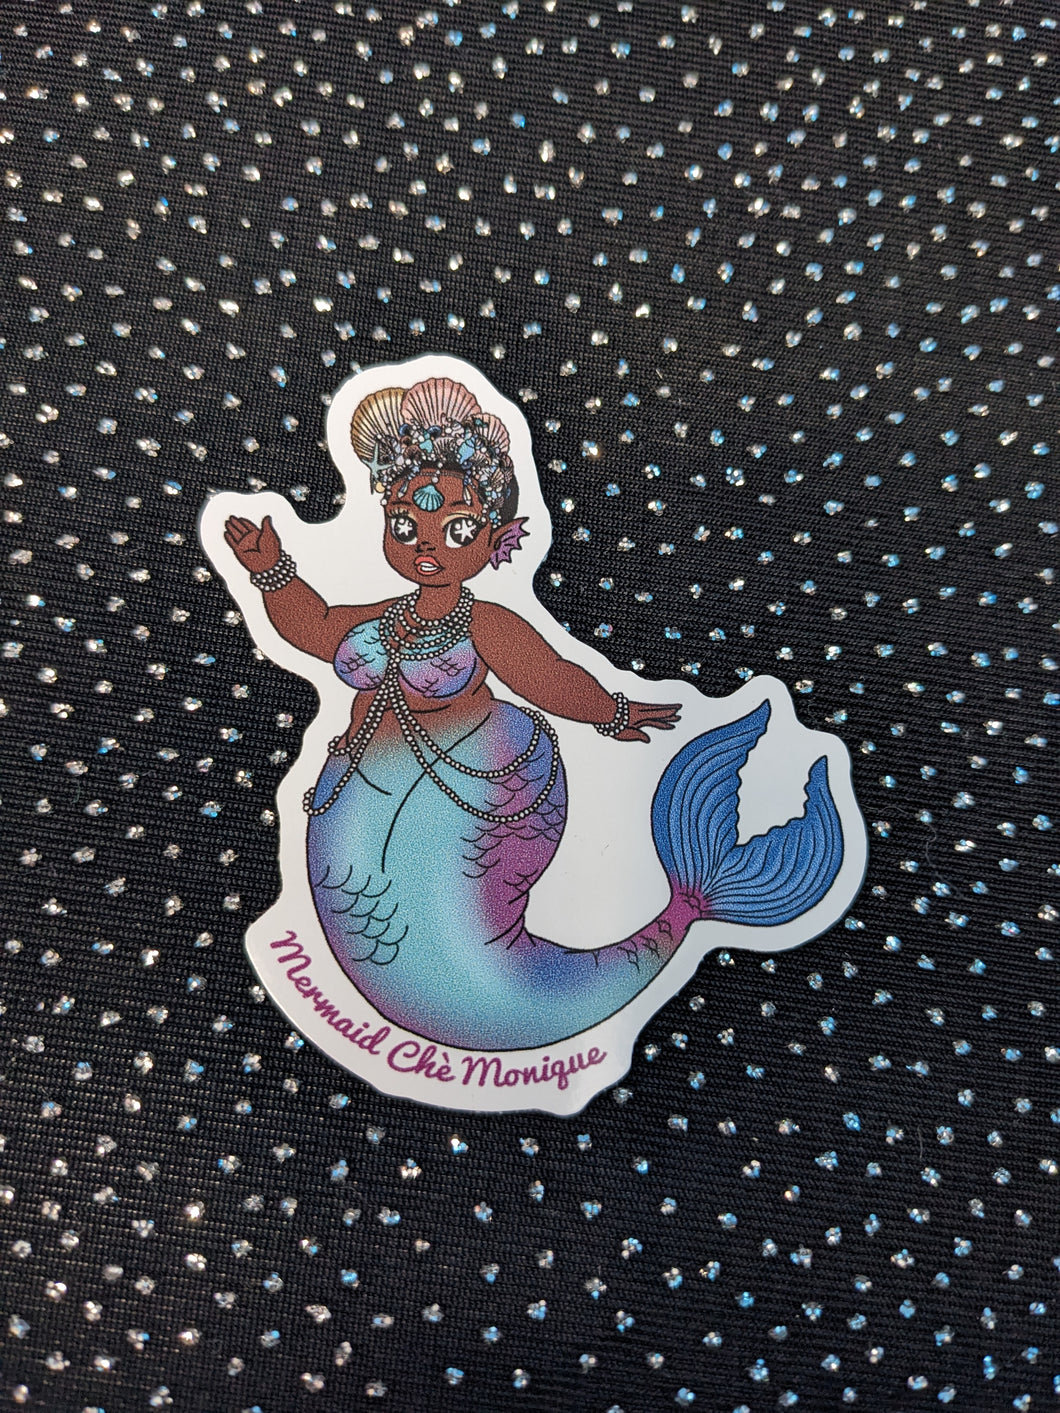 Mermaid Chè Monique New Tail Mermie Sticker